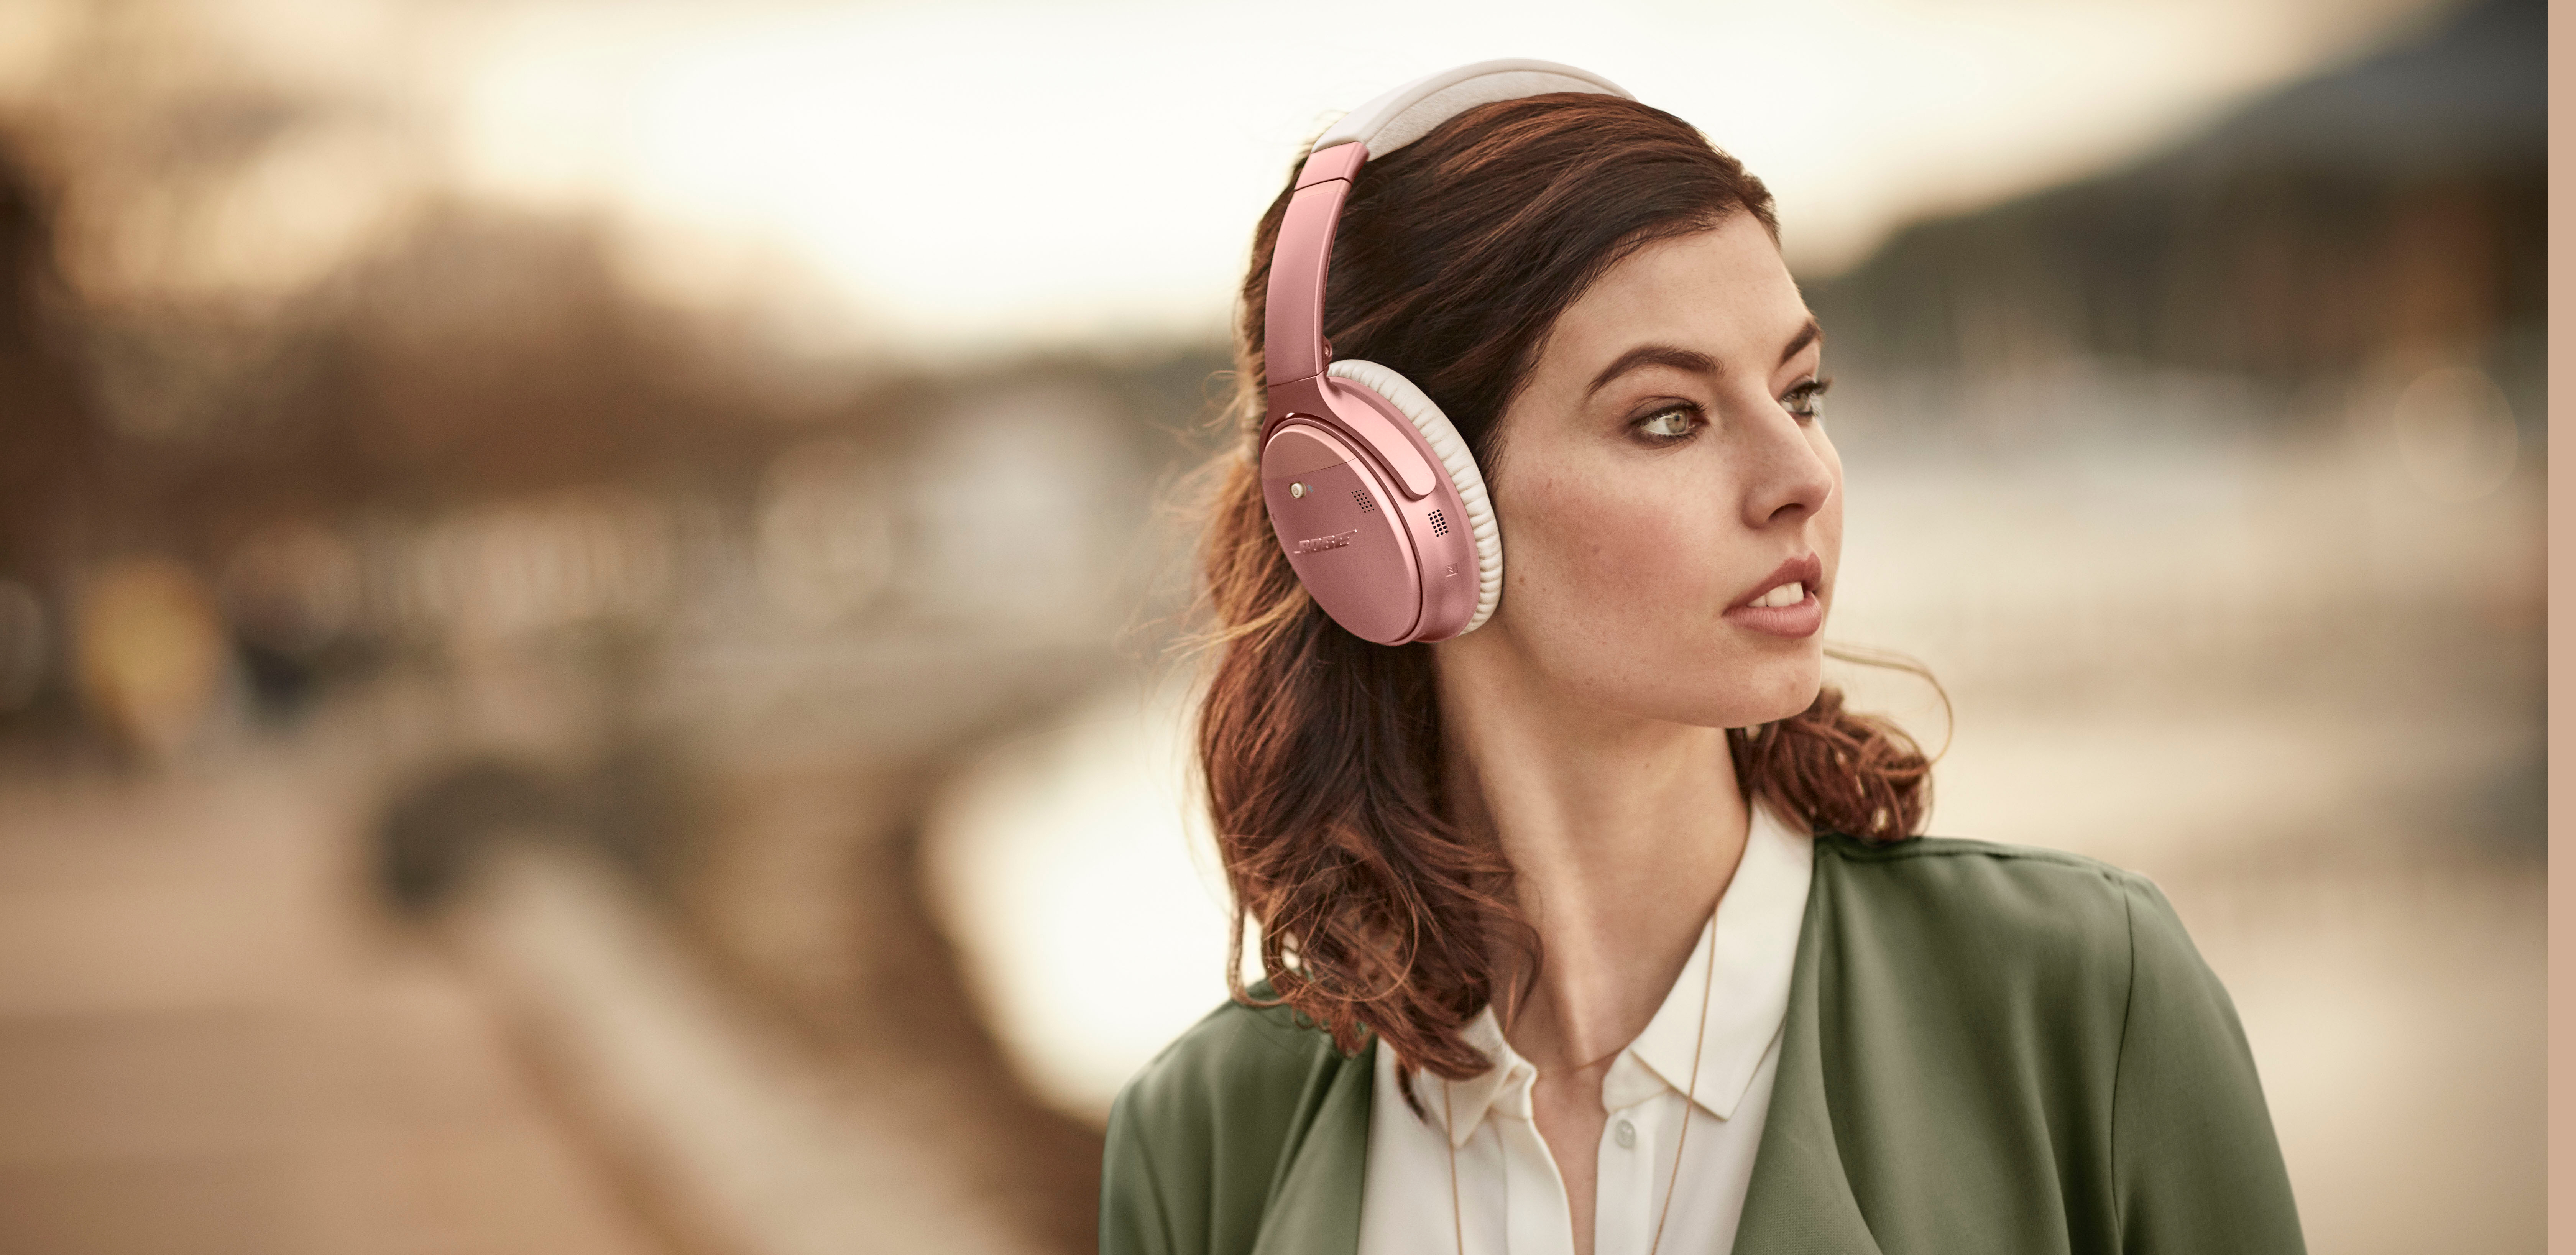 新製品】QuietComfort35 wireless headphones II Limited edition「ローズゴールド」が登場！【#BOSE】  - イヤホン・ヘッドホン専門店eイヤホンのブログ